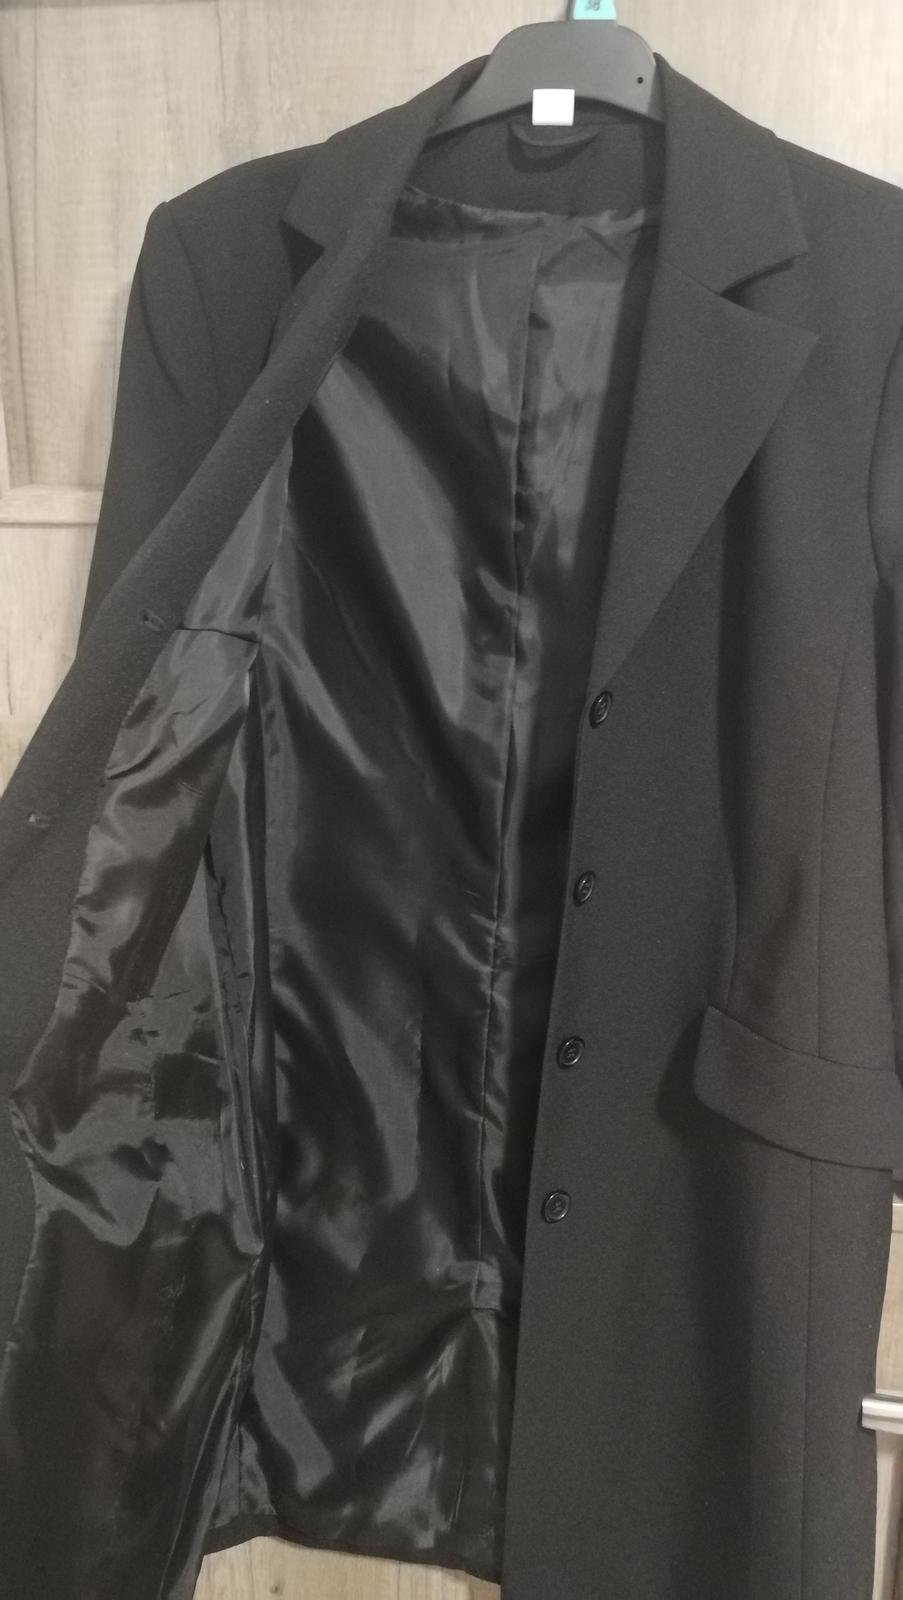 Dámský černý kabátek - zkrácená velikost 19 - Obrázek č. 2